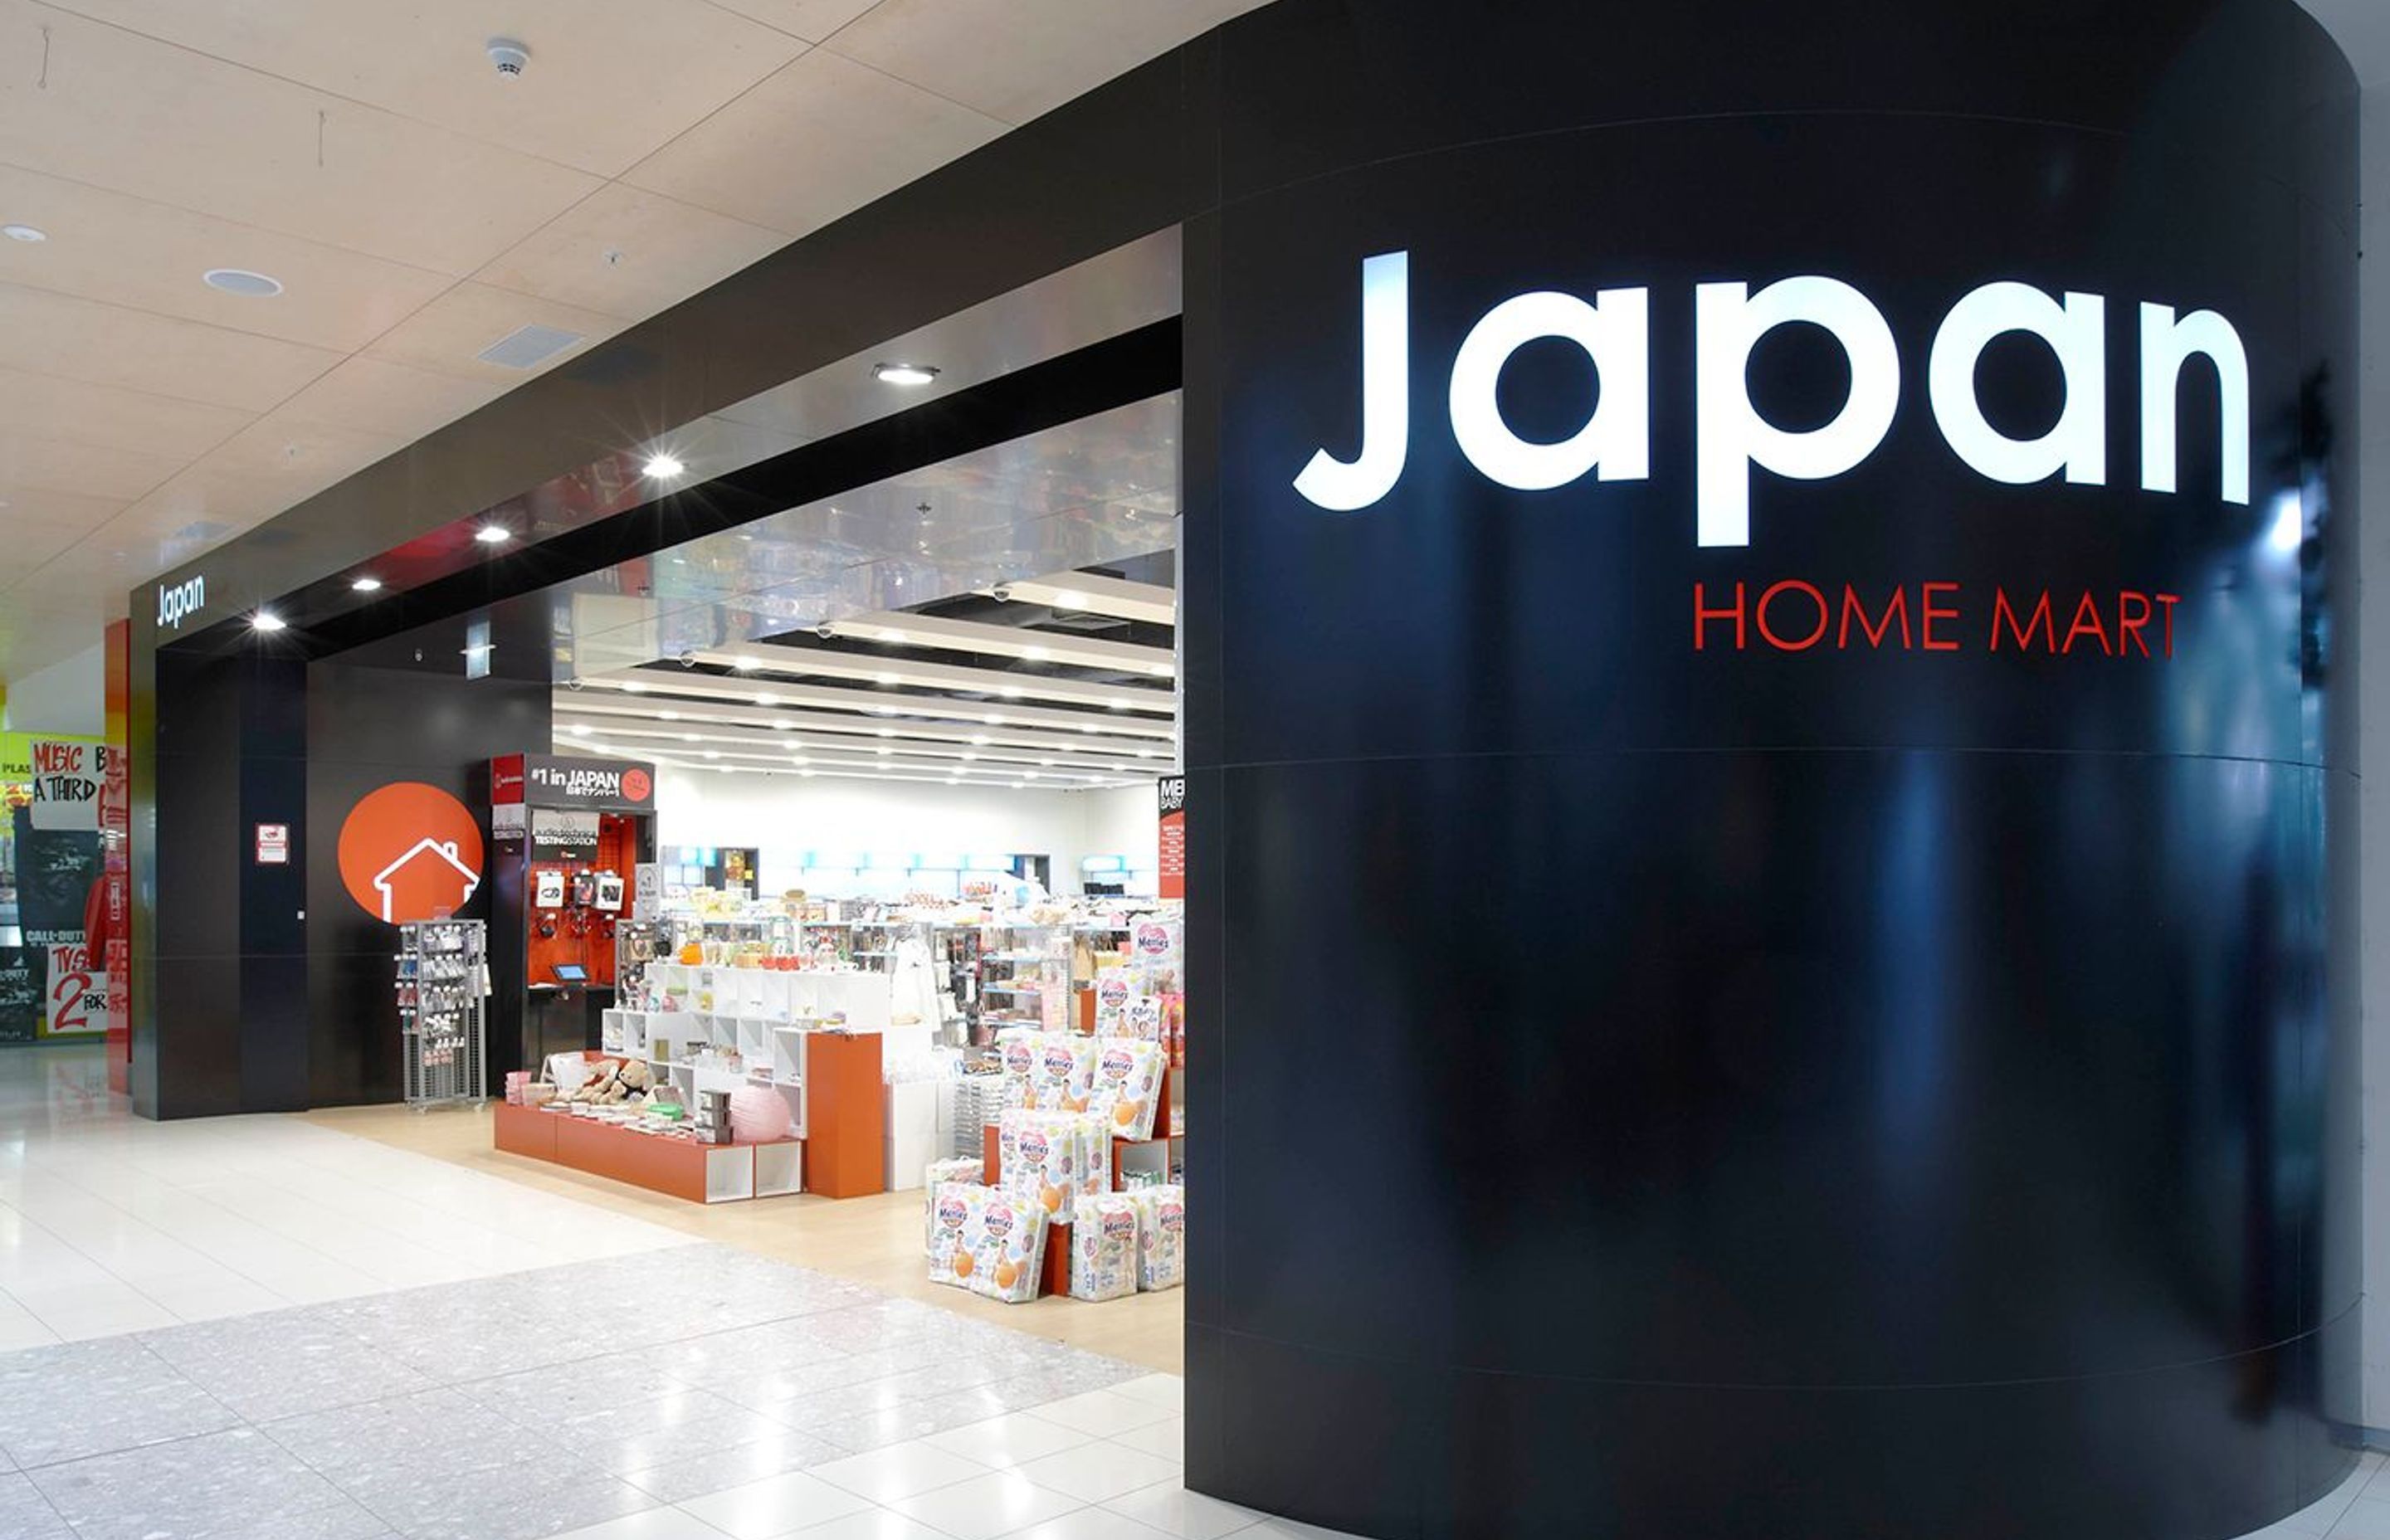 Japan Home Mart